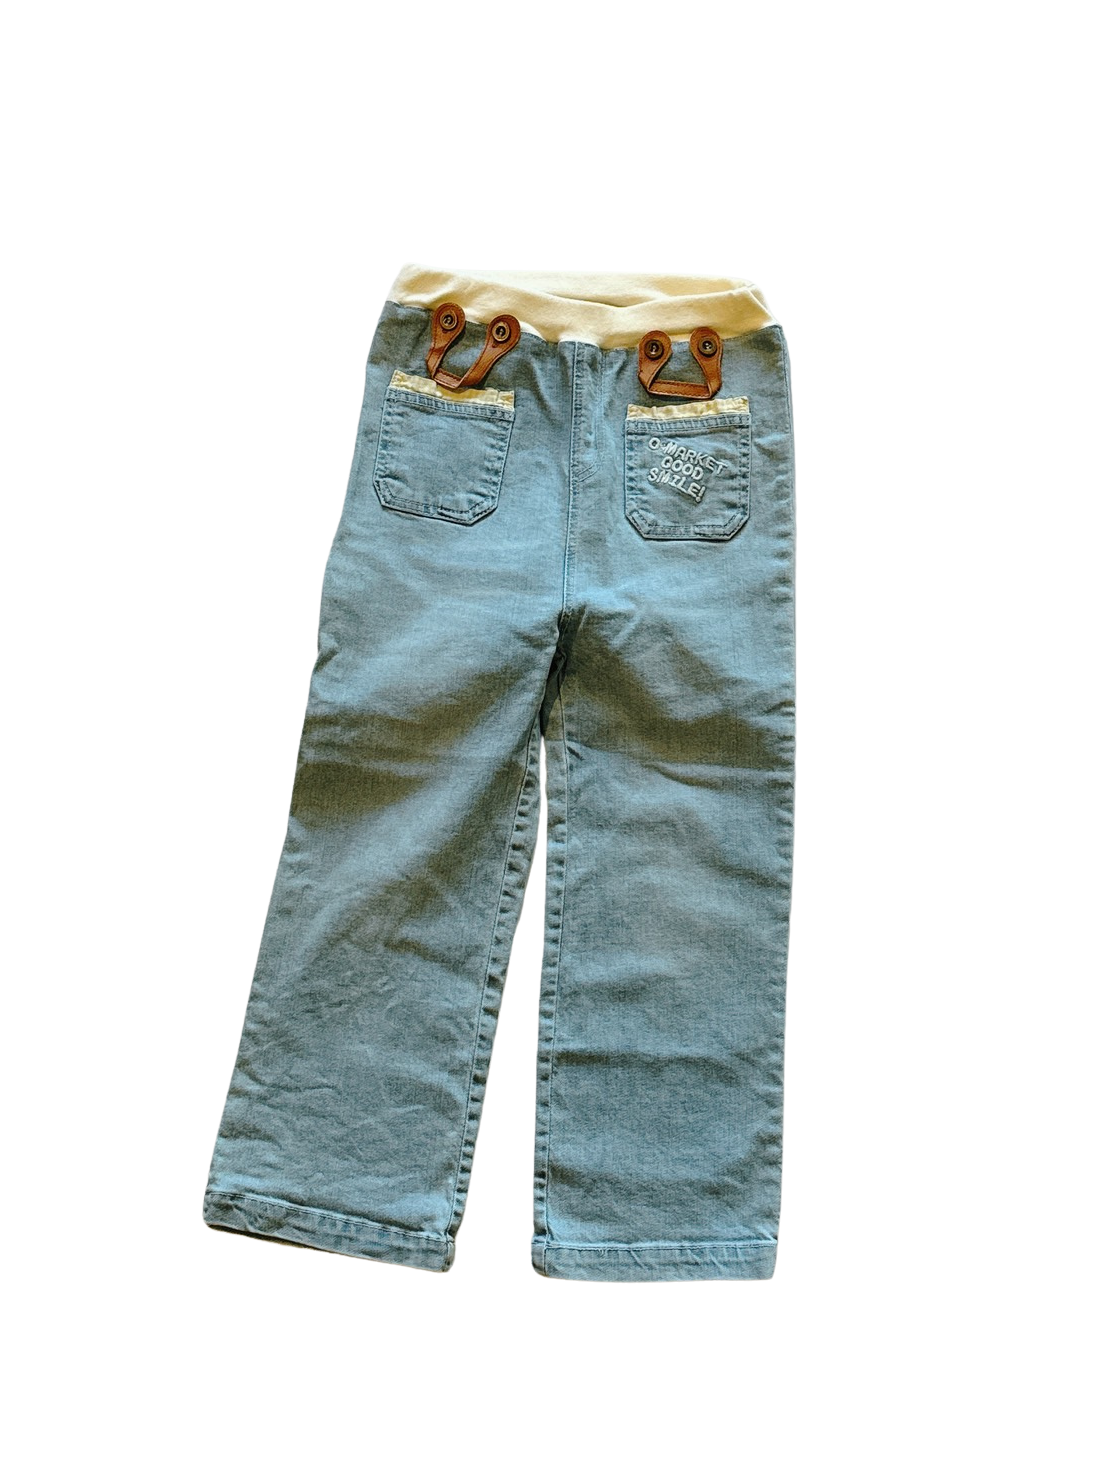 日牌淺藍造型女童牛仔長褲(110)